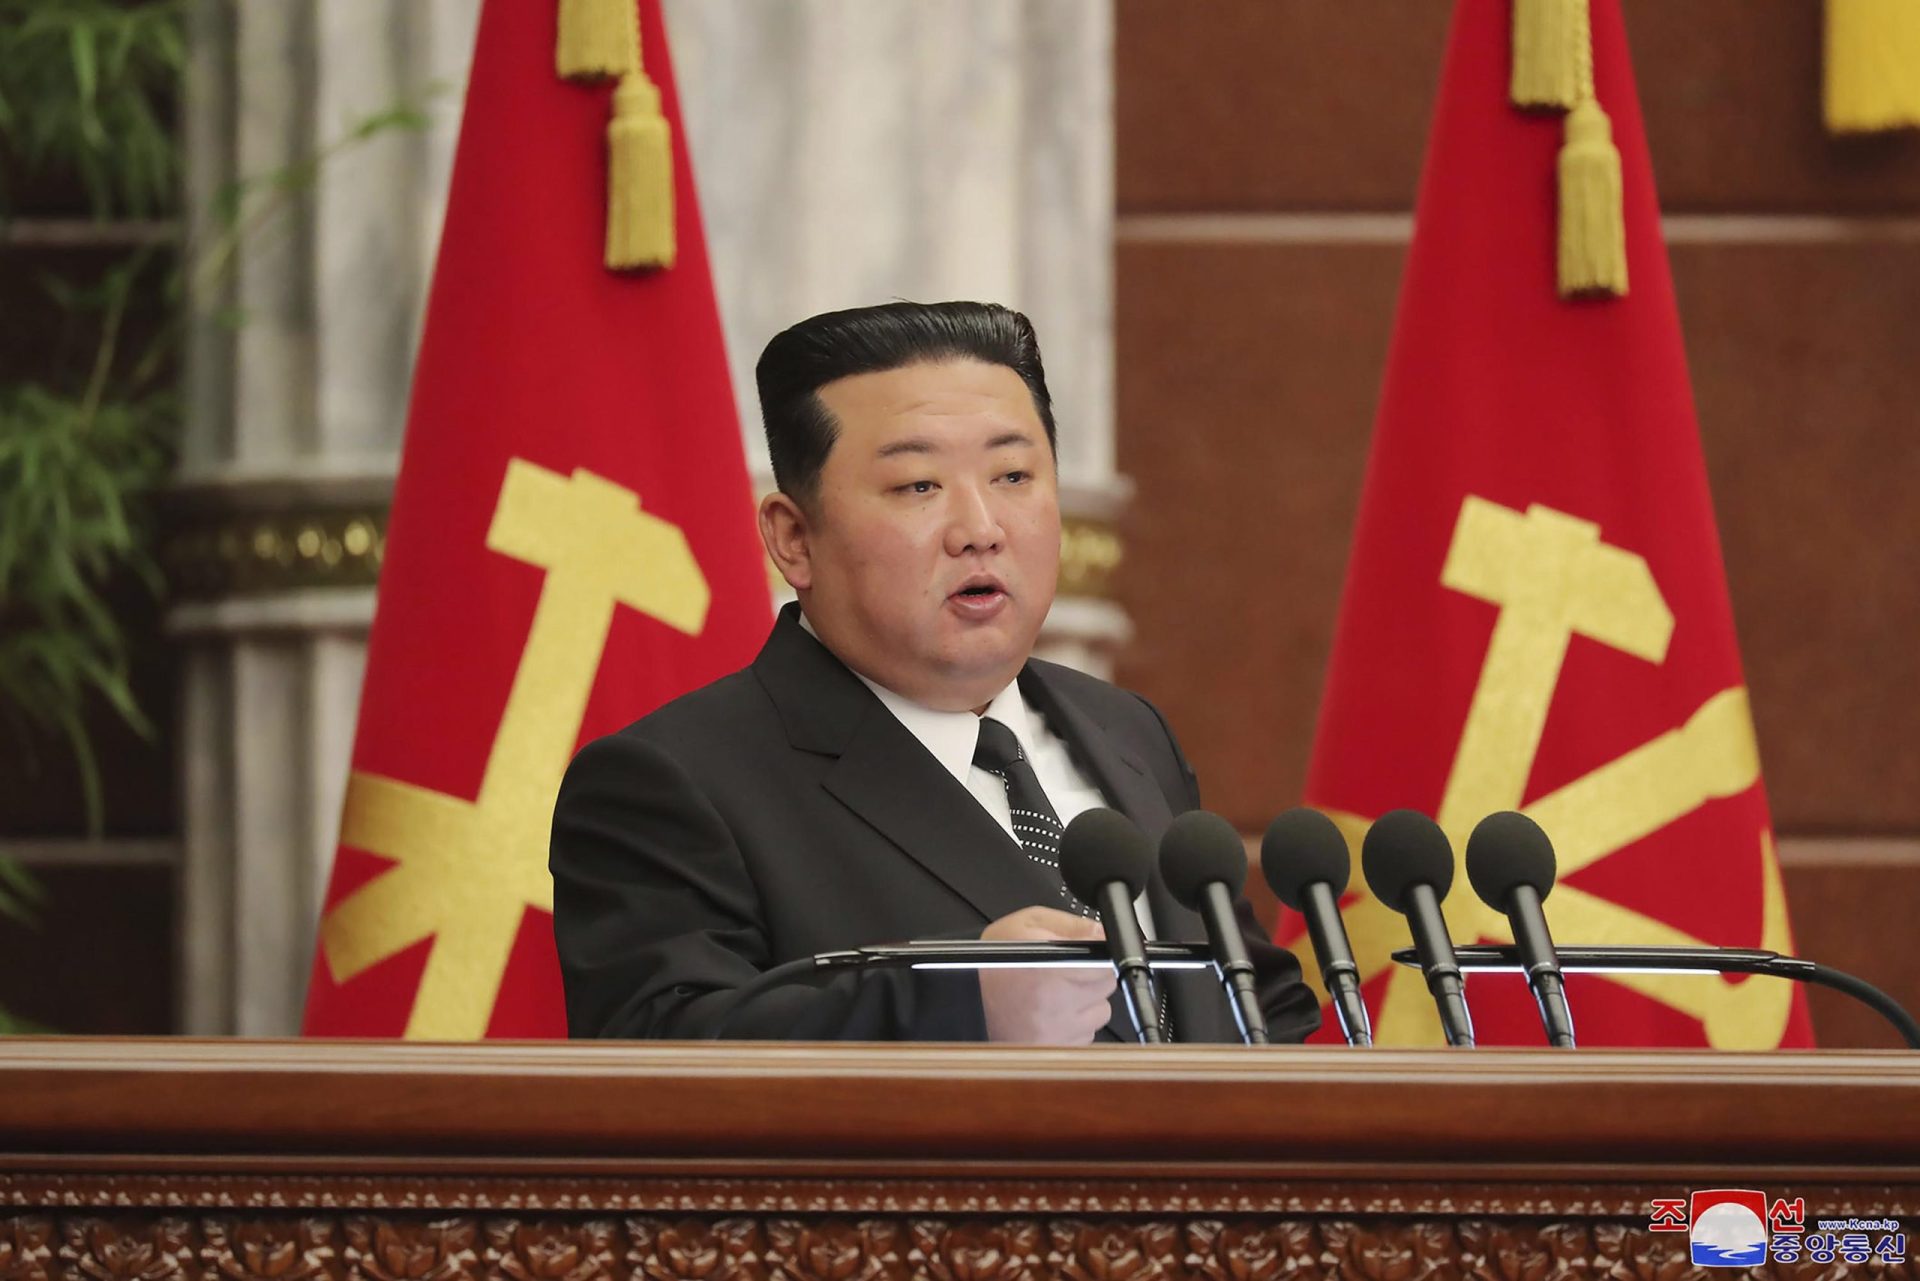 Líder norcoreano reafirma acumulación de armas en reunión del partido